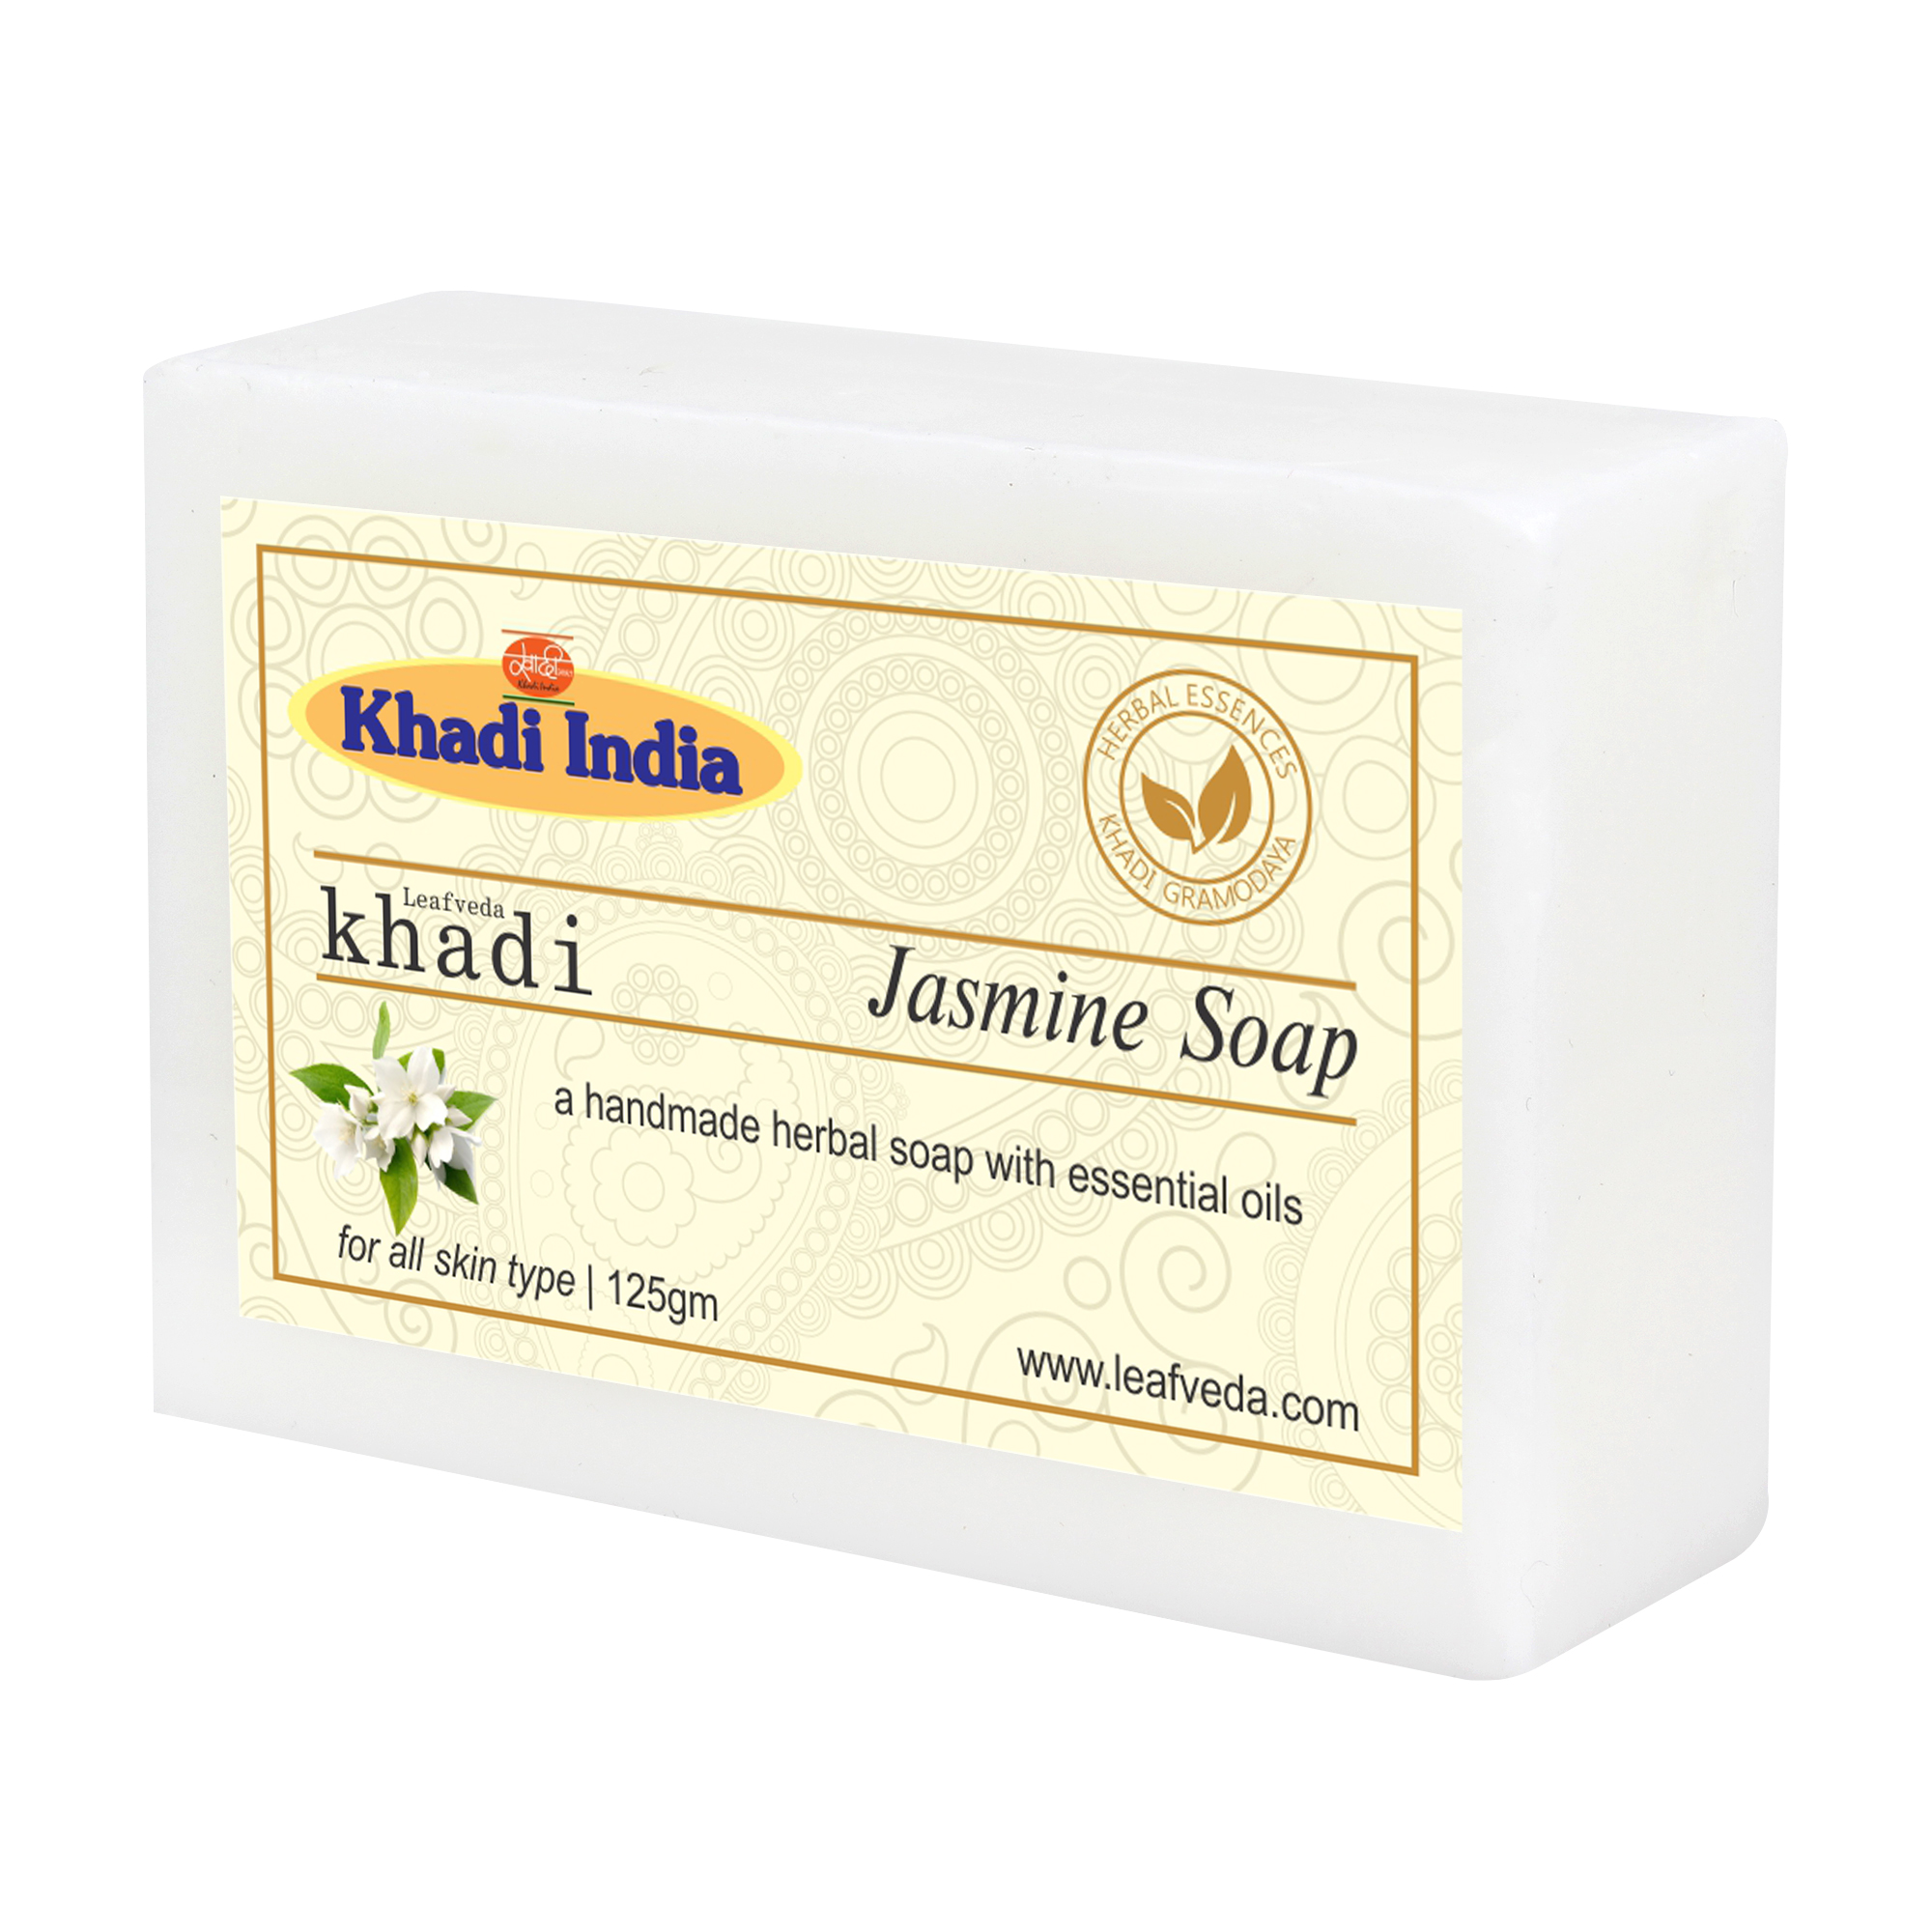 Buy Khadi Leafveda Jasmine Soap at Best Price Online